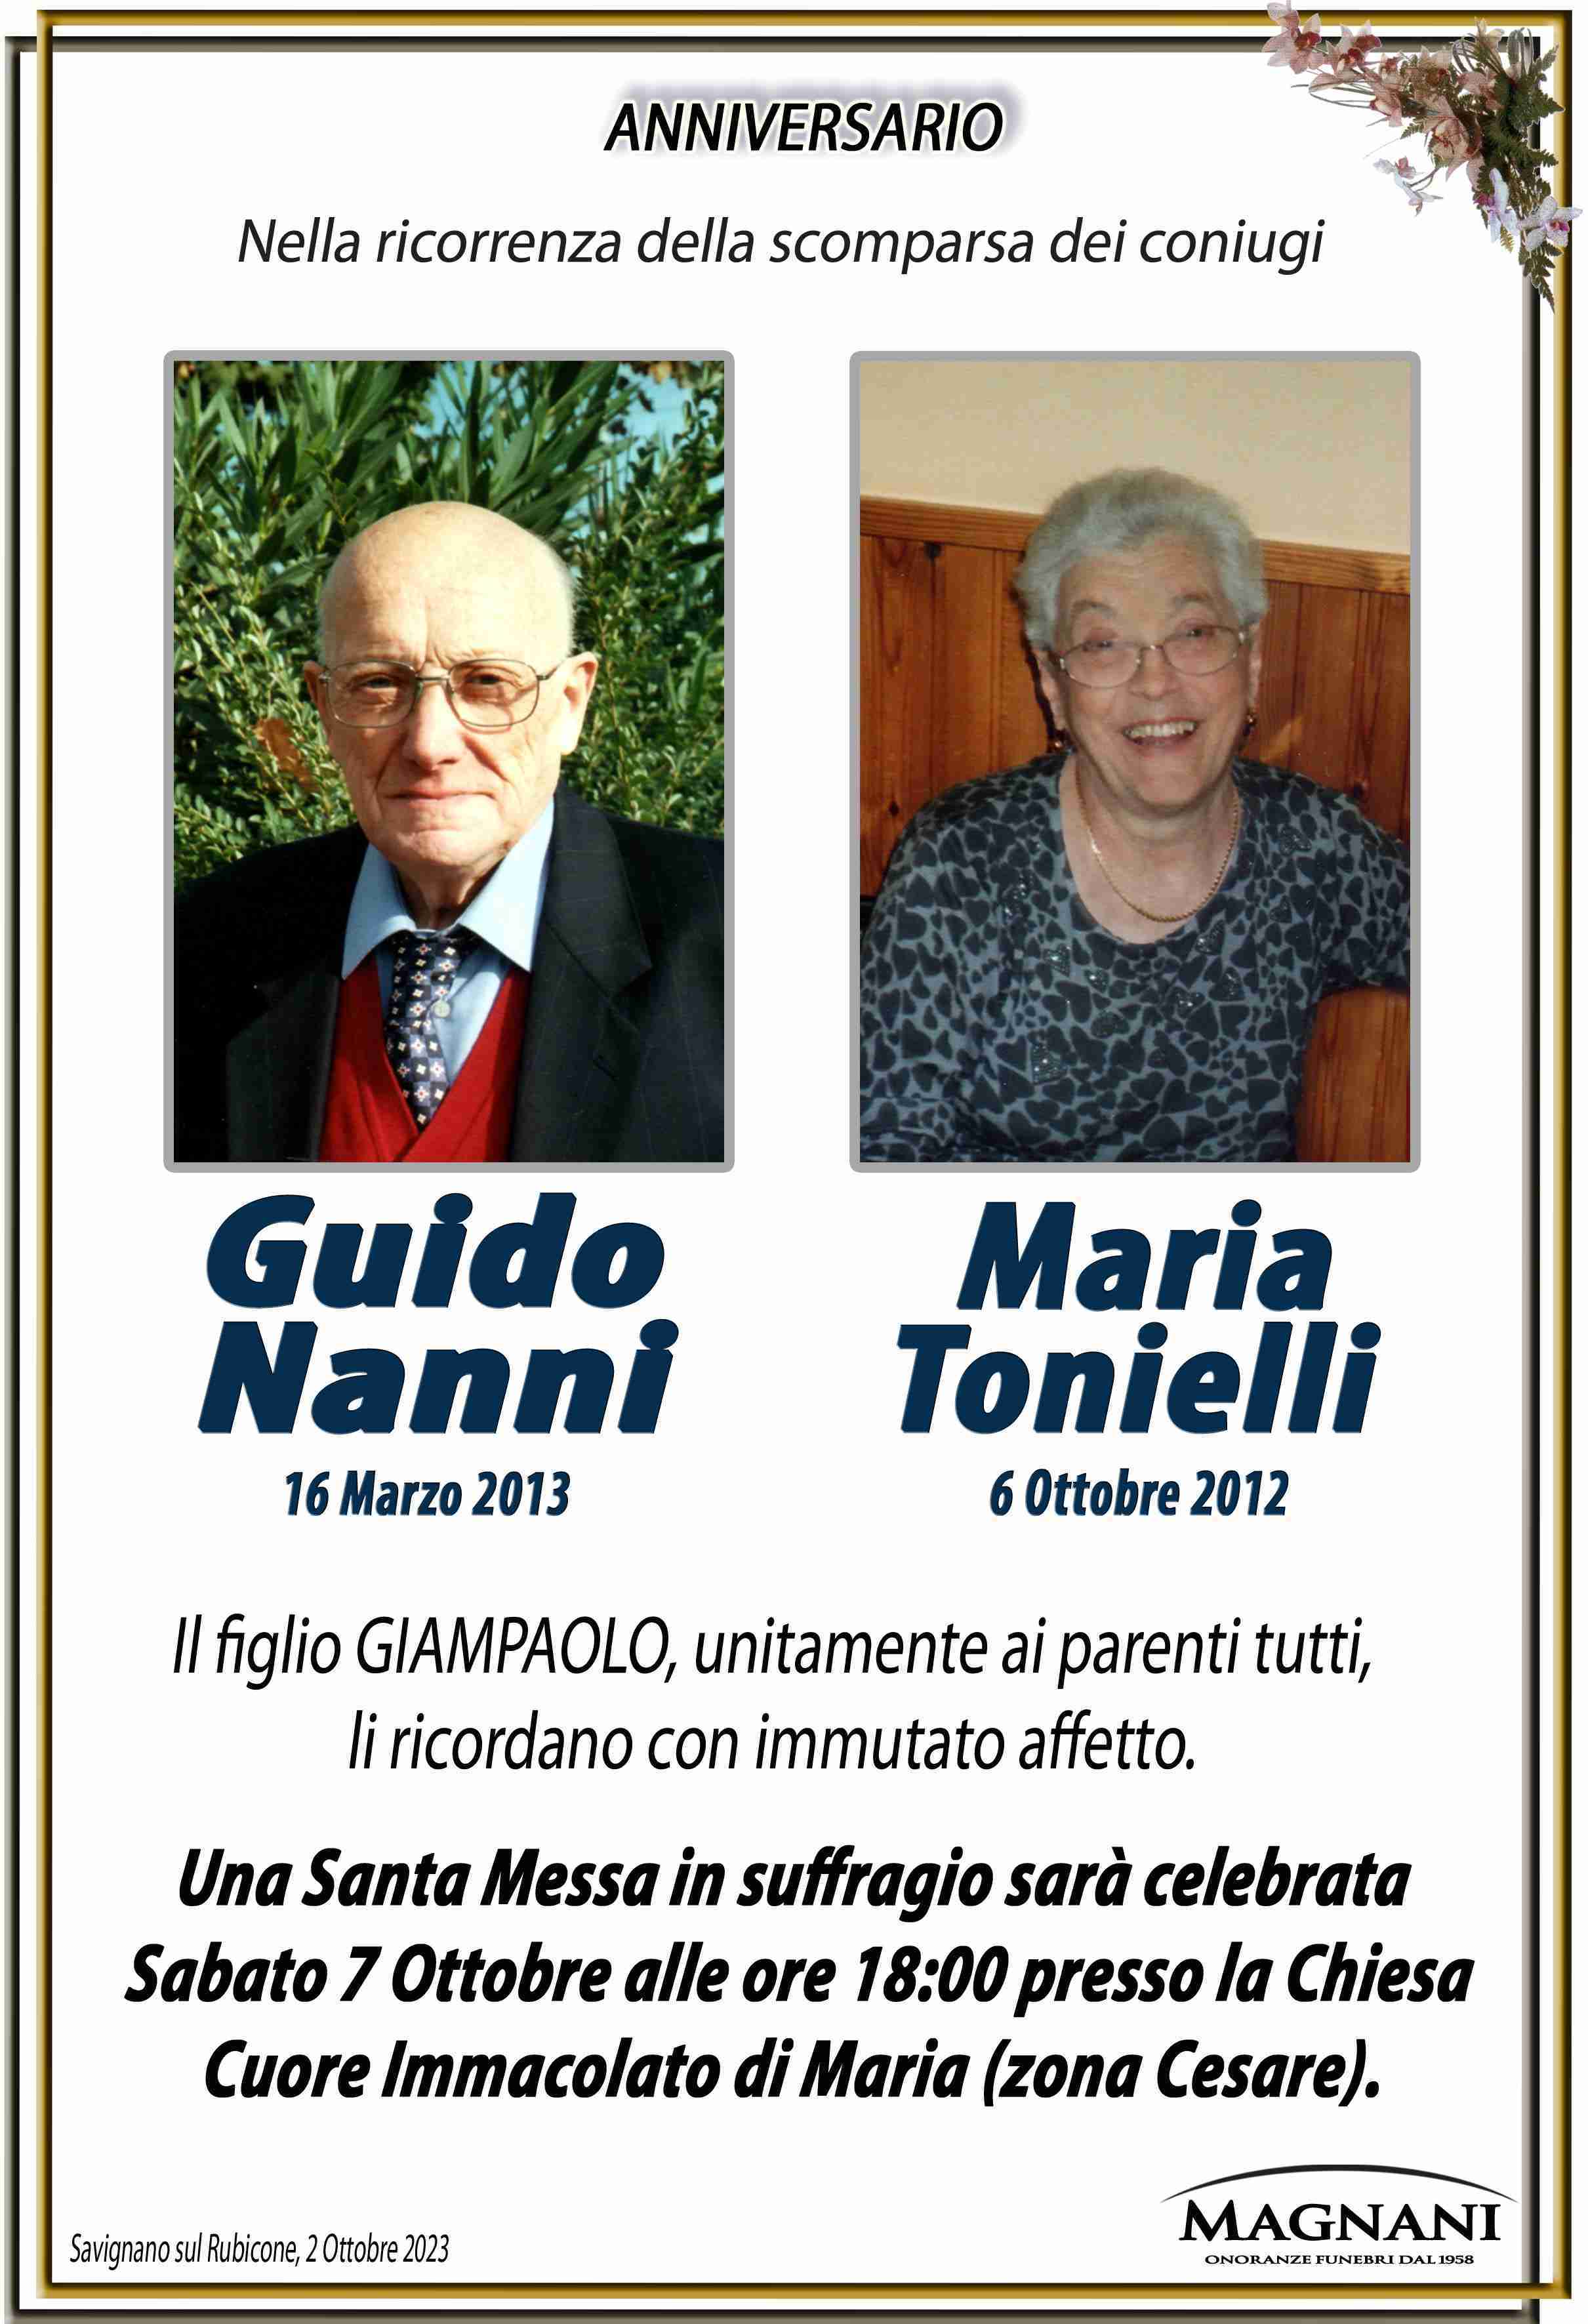 Guido Nanni e Maria Tonielli